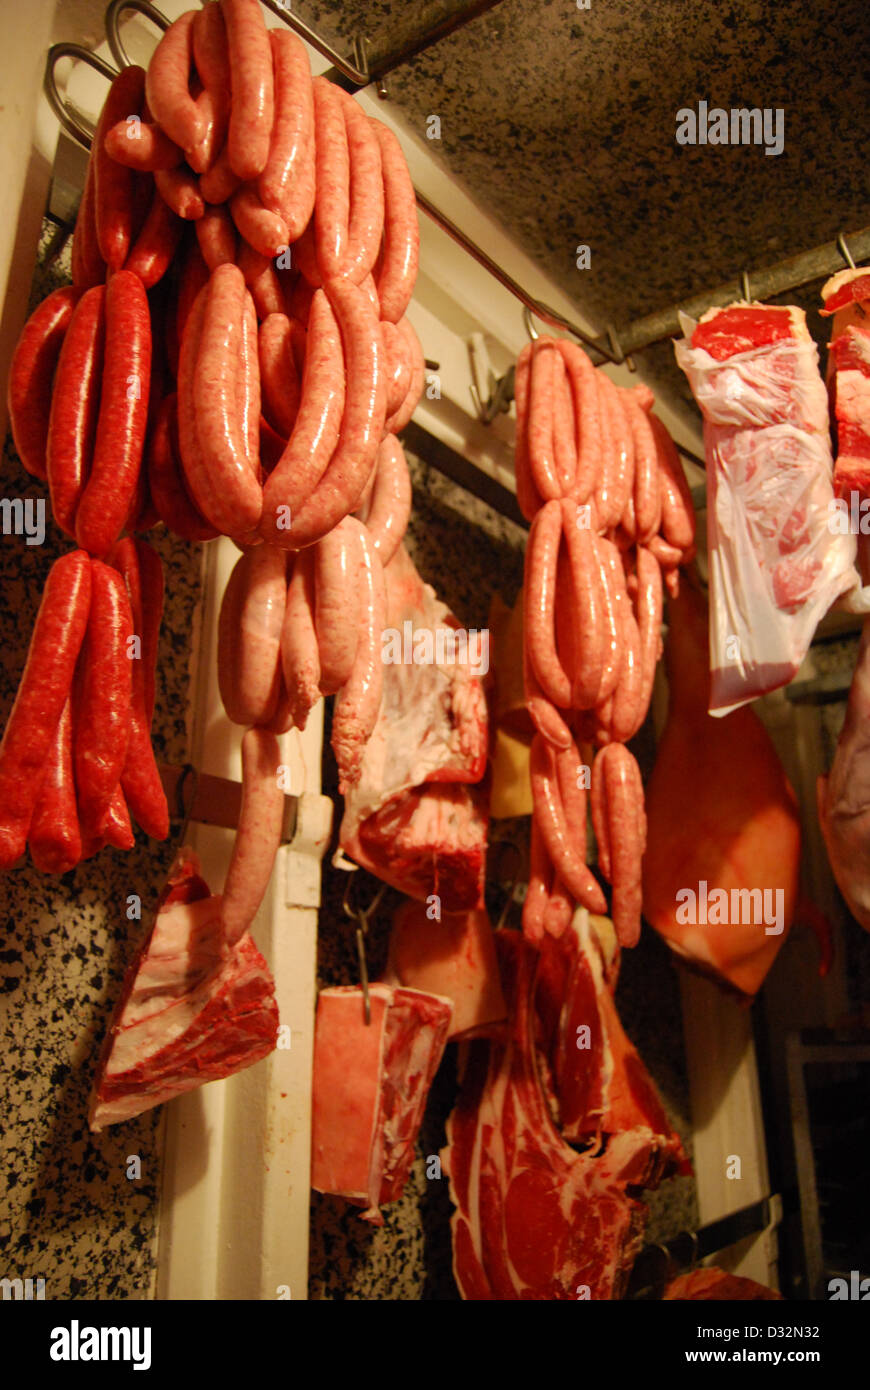 Platten von Fleisch und Wurstwaren, Schwein, Lamm, weißem und rotem Fleisch hängen in einem Metzger Kühllagerung warten darauf geschnitten und sortiert werden. Stockfoto